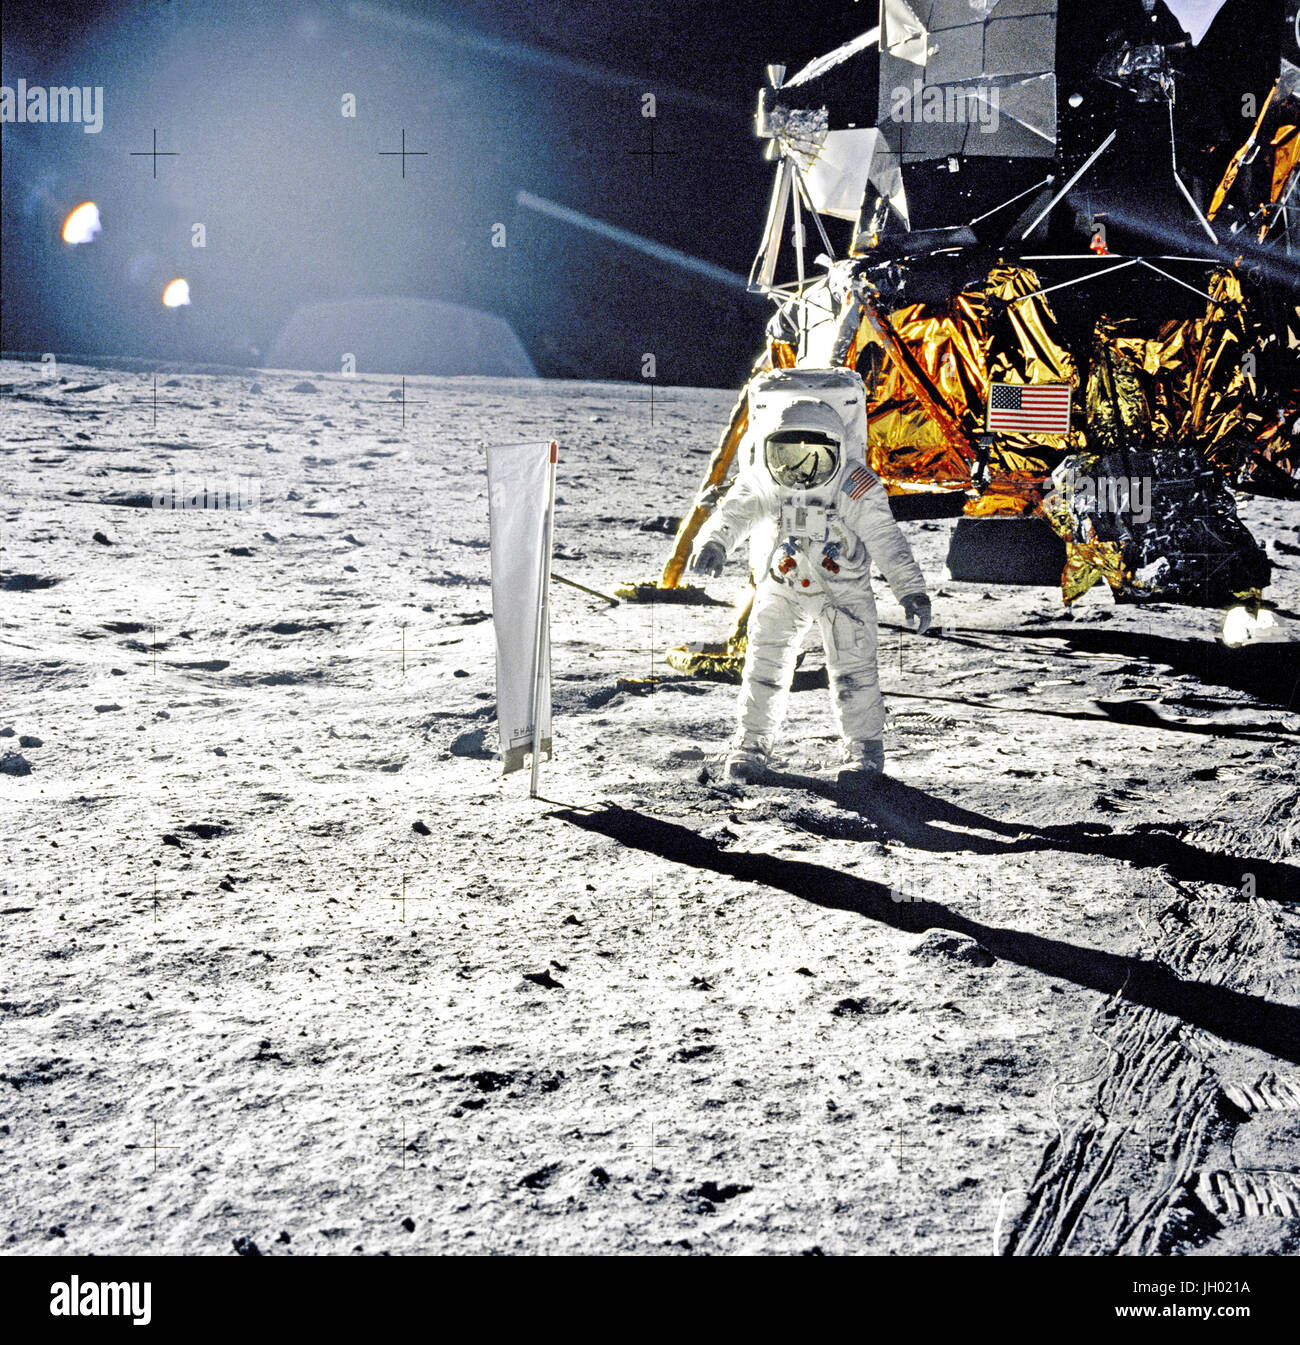 Astronaut Edwin E. Aldrin, Jr., Pilot der Mondlandefähre, wird während der Apollo 11 Extravehicular Activity (EVA) auf dem Mond fotografiert. Im Hintergrund Rechte ist die Mondfähre "Eagle." Aldrin des Rechts ist der Sonnenwind Zusammensetzung (SWC) Experiment bereits bereitgestellt. Dieses Foto wurde von Neil A. Armstrong mit einem 70 mm lunar Surface-Kamera aufgenommen... Stichwörter. Fotograf: NASA Edwin E. Buzz Aldrin Stockfoto